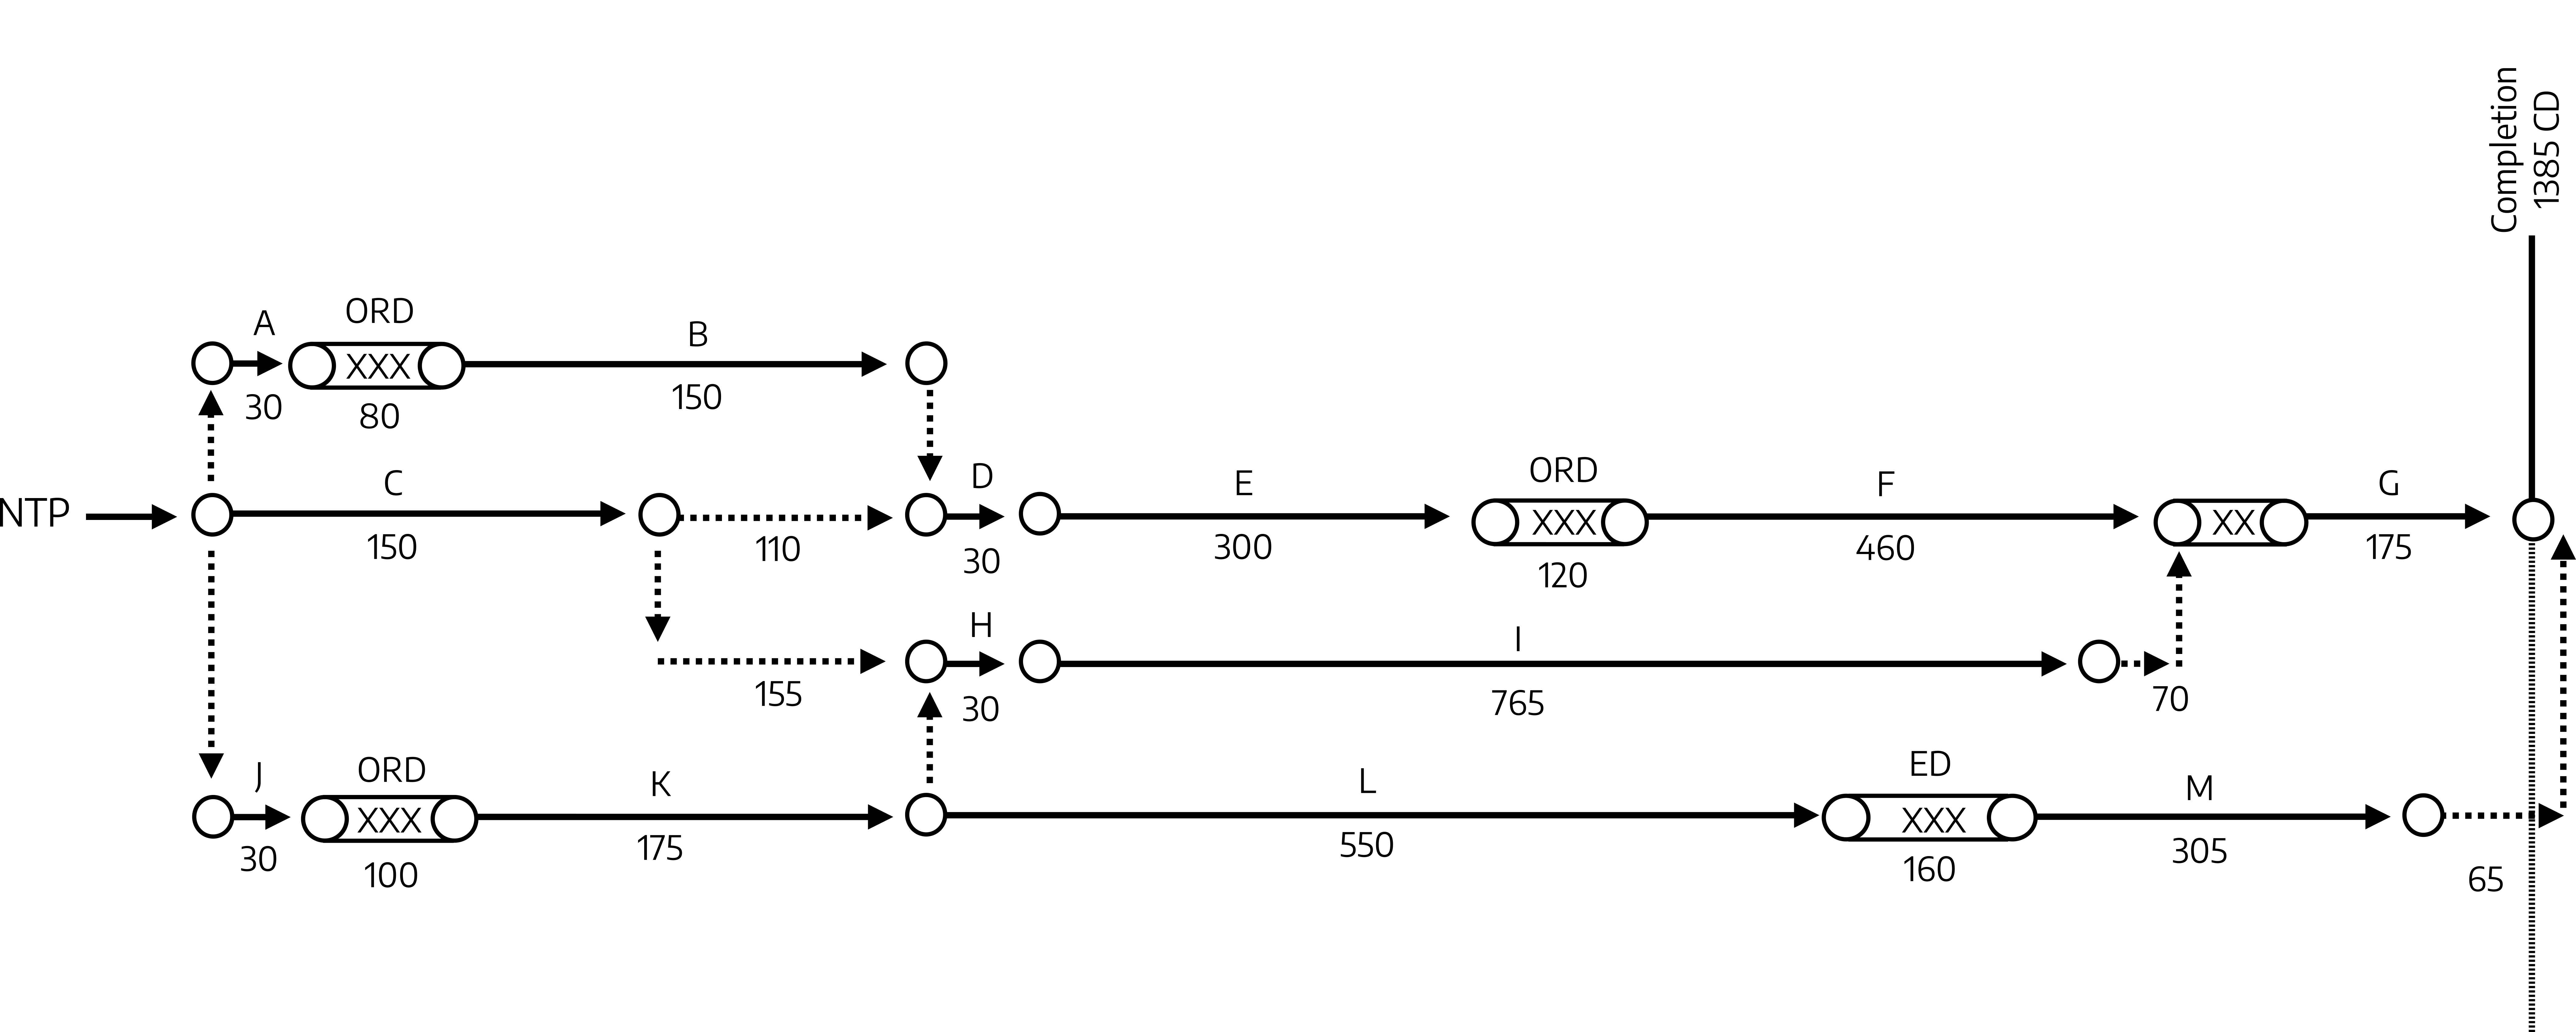 Linear timeline. Main line: NTP arrow C (150) arrow 110 arrow D (30) arrow E (300) arrow ORD (120) arrow F (460) arrow CRD (40) arrow G (175) arrow completion (1385 CD). Short line above main line: NTP arrow up to A (30), ORD (80) arrow B (150) arrow down to D to connect to main line. Short line below main line: 110 from main line down arrow 155 right arrow H (30) arrow I (765) arrow 70 arrow up to CRD to connect to main line. Long line at the very bottom: J (30), ORD (100) arrow K (175) arrow L (550) arrow ED (160) arrow M (305) arrow 65 arrow completion (1385 CD).